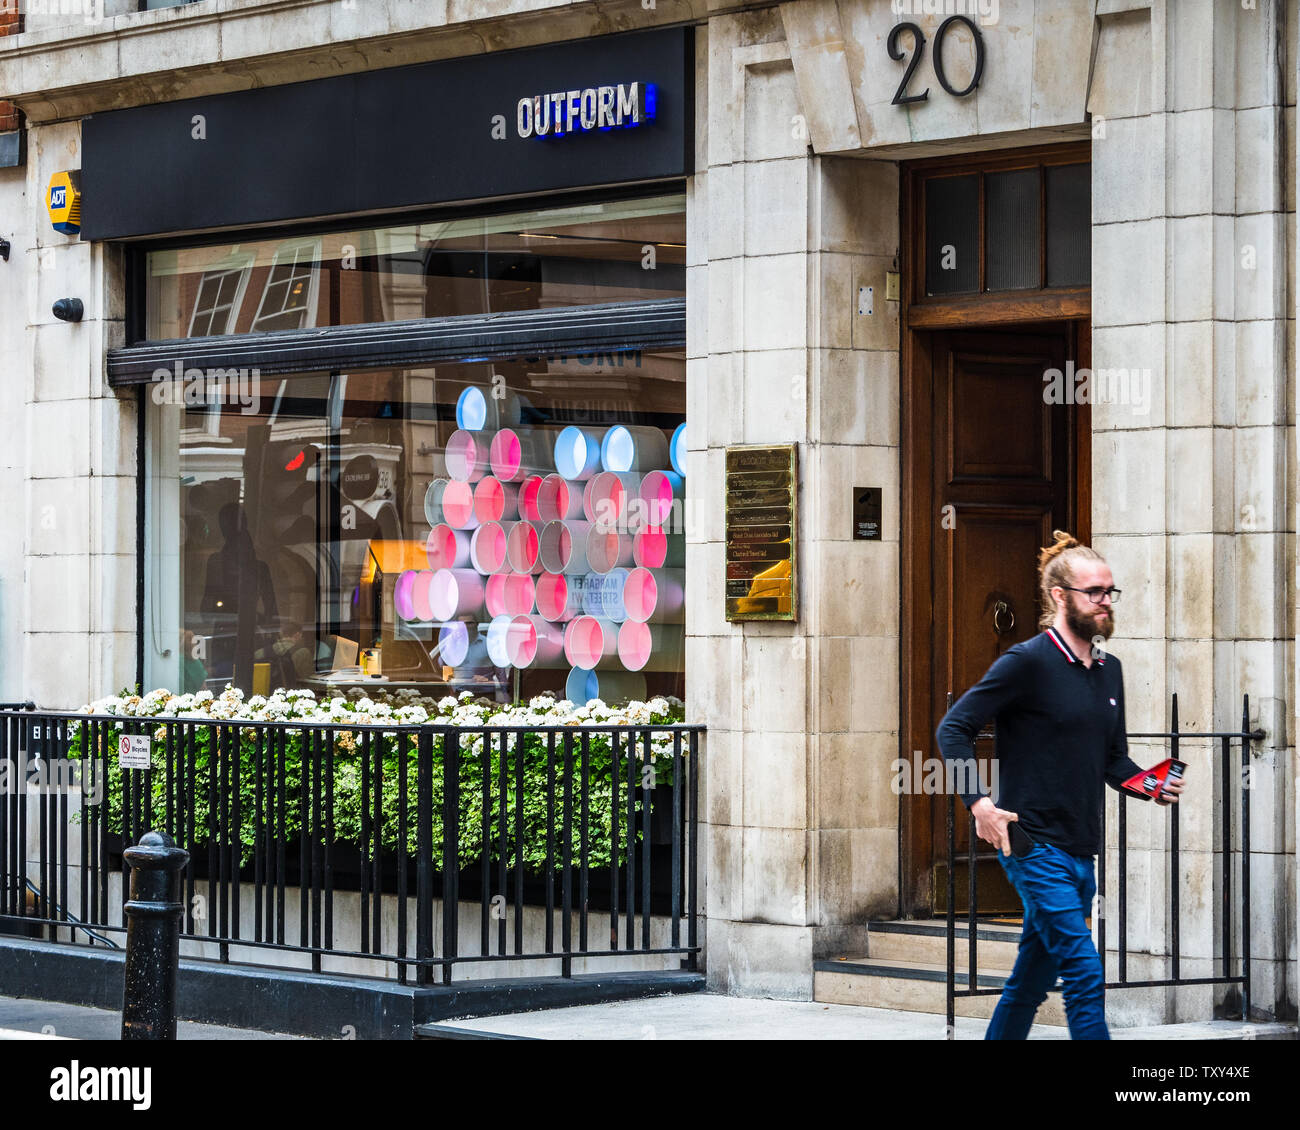 Outform Agency London - vendita al dettaglio servizi di consulenza forniscono la strategia retail e design - marchio se stessi come futura società di vendita al dettaglio Foto Stock